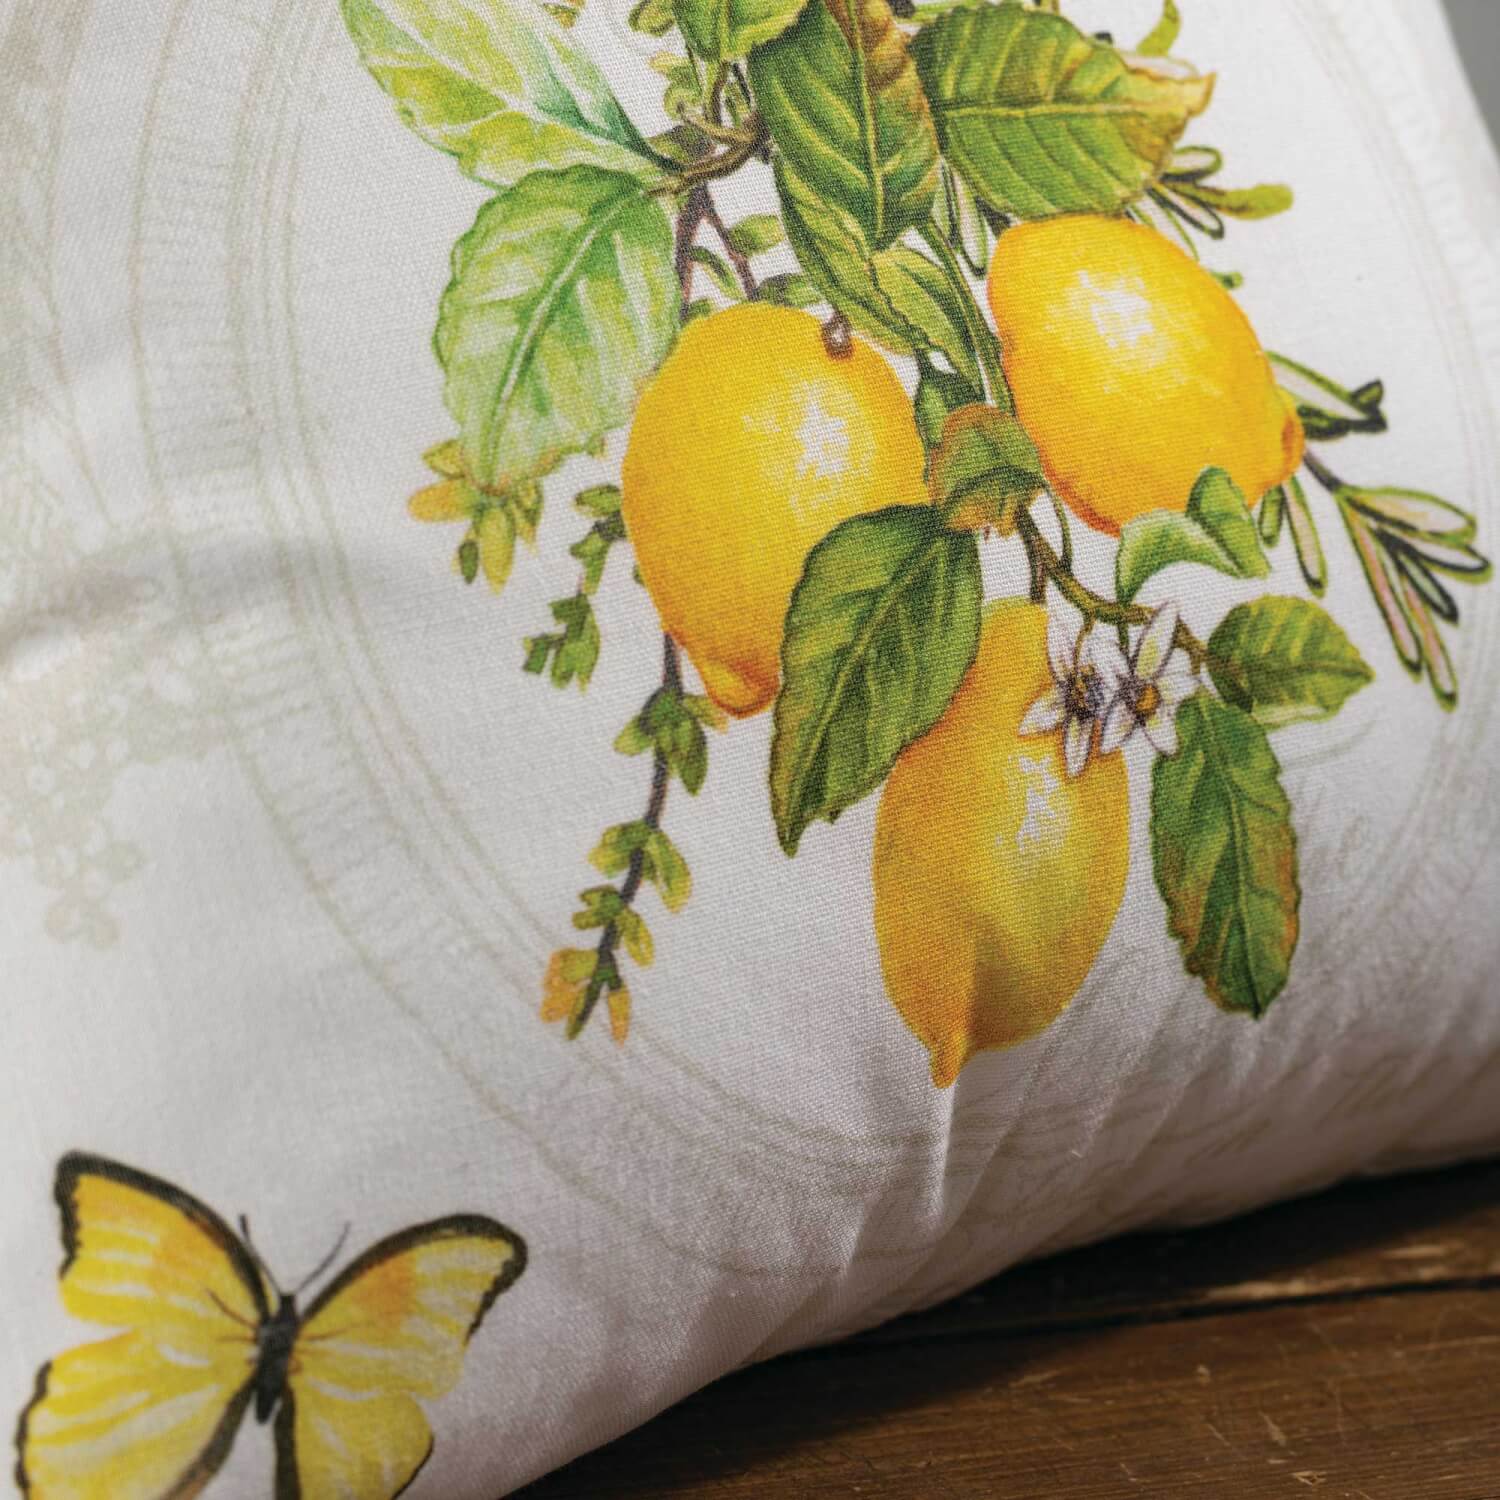 Lemon Patterned Pillow